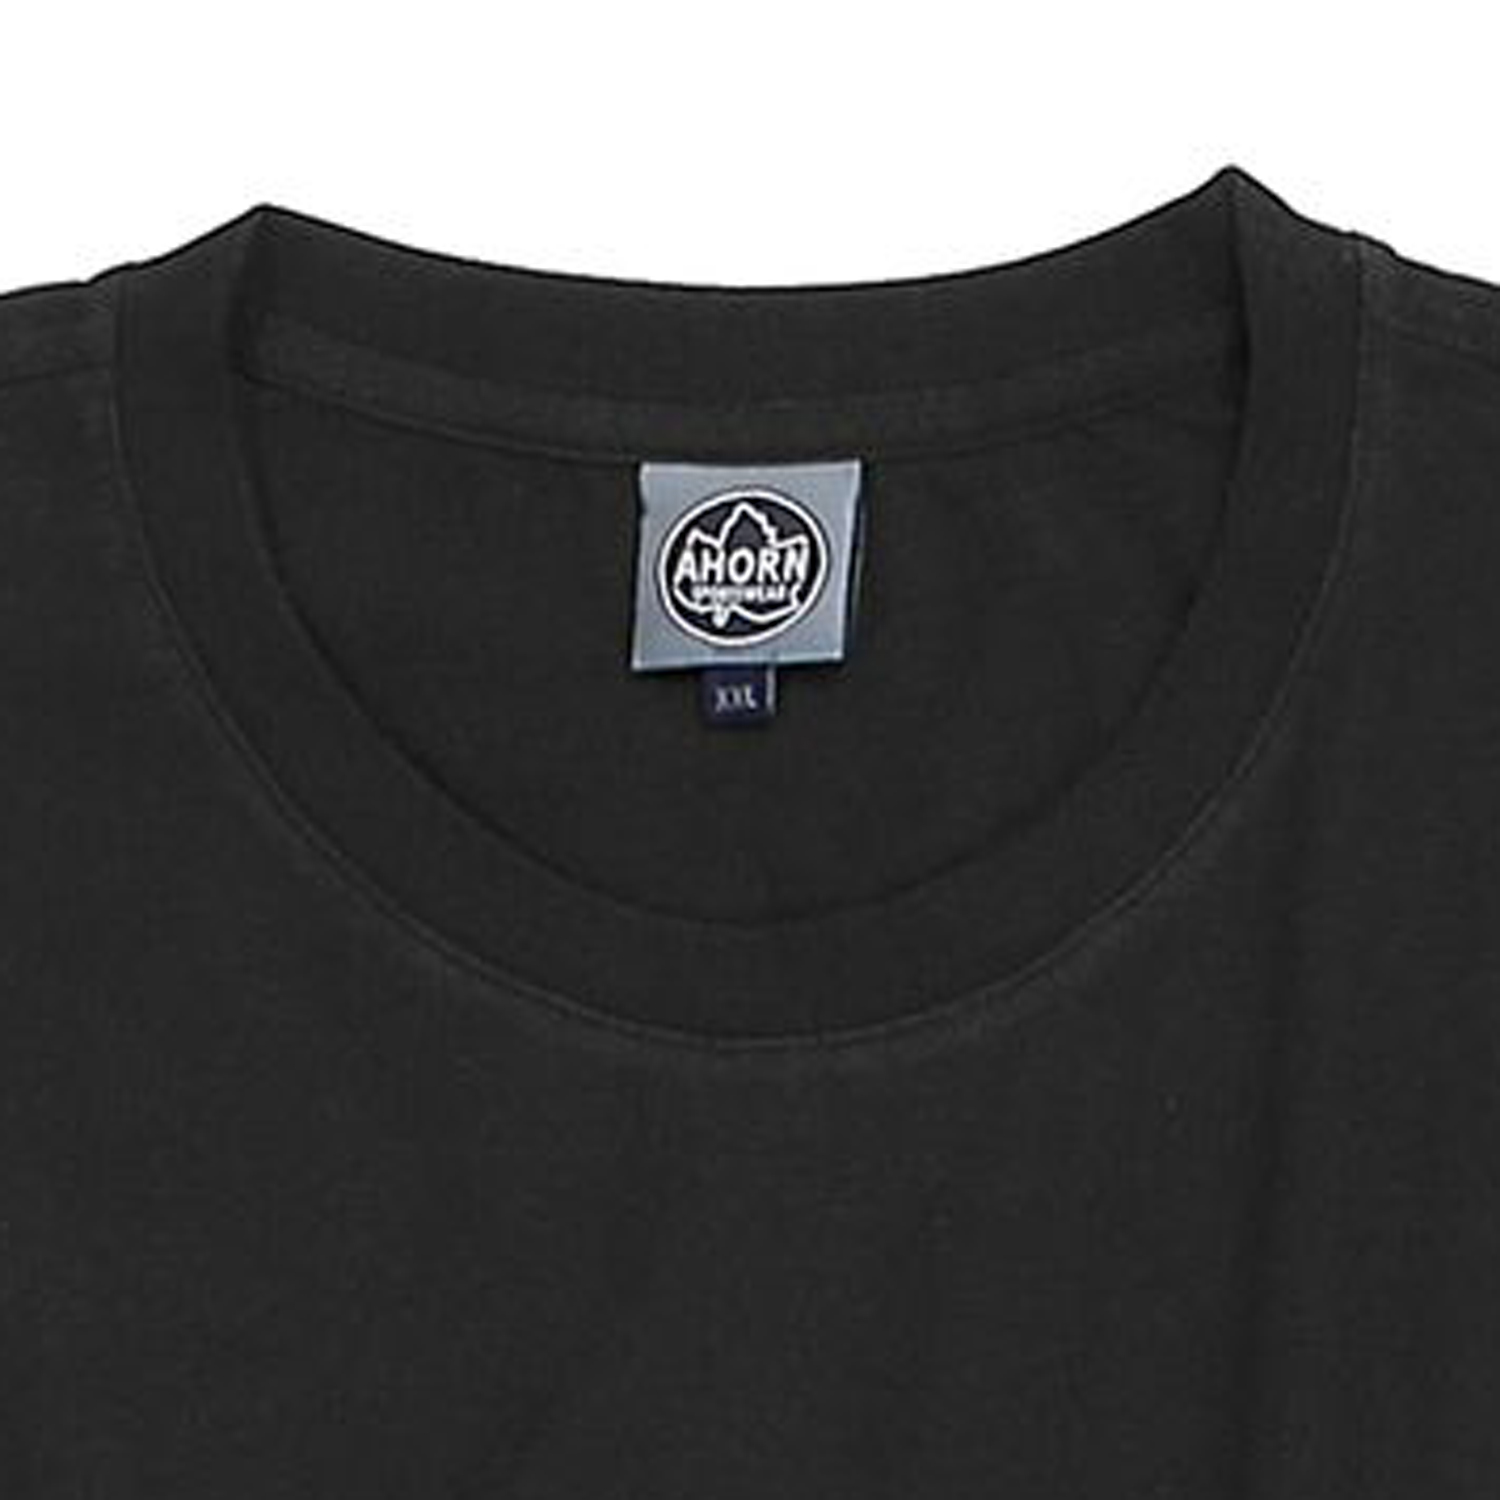 Doppelpack schwarze T-Shirts von Ahorn Sportswear in großen Größen bis 10XL